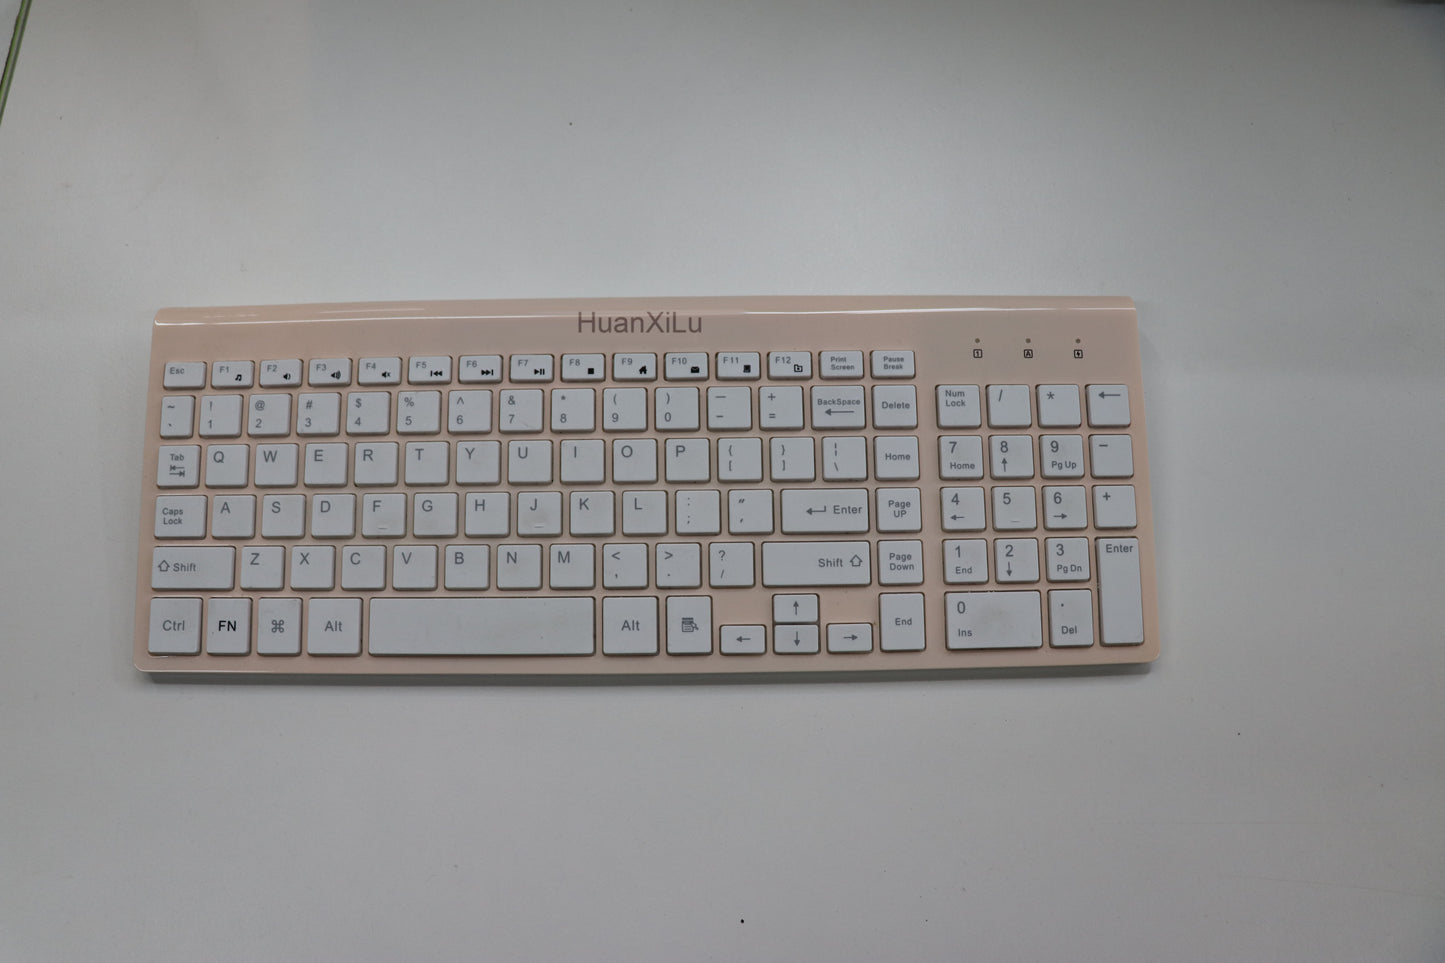 HuanXiLu 2.4G Wireless Keyboard Stainless Steel Ultra Slim Full Size Keyboard